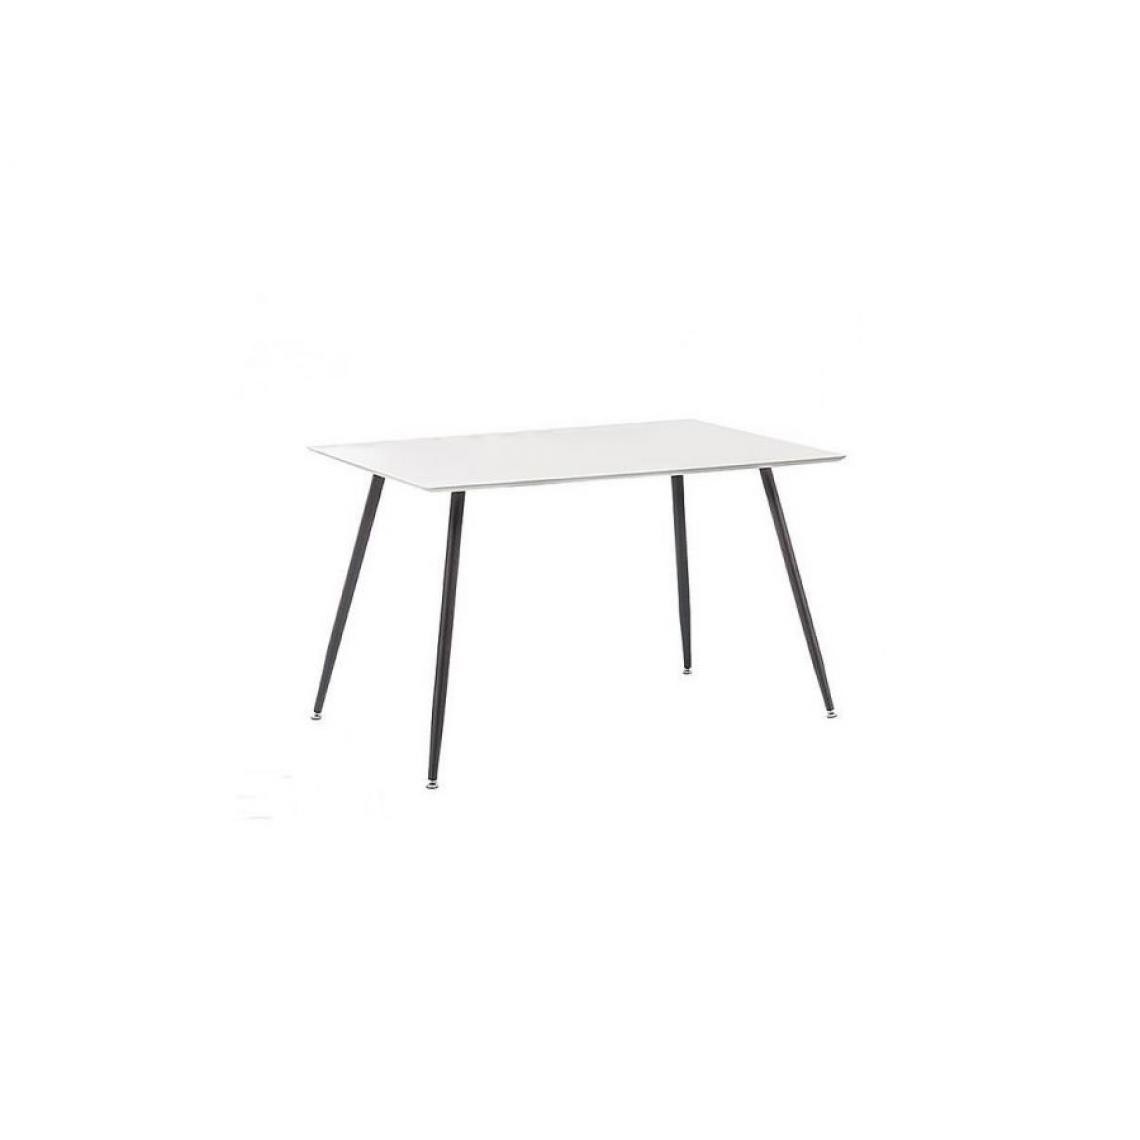 Hucoco - FNORO - Table moderne pour la salle à manger - 120x80x75 cm - Plateau en bois MDF - Table fixe - Style scandinave - Blanc - Tables à manger